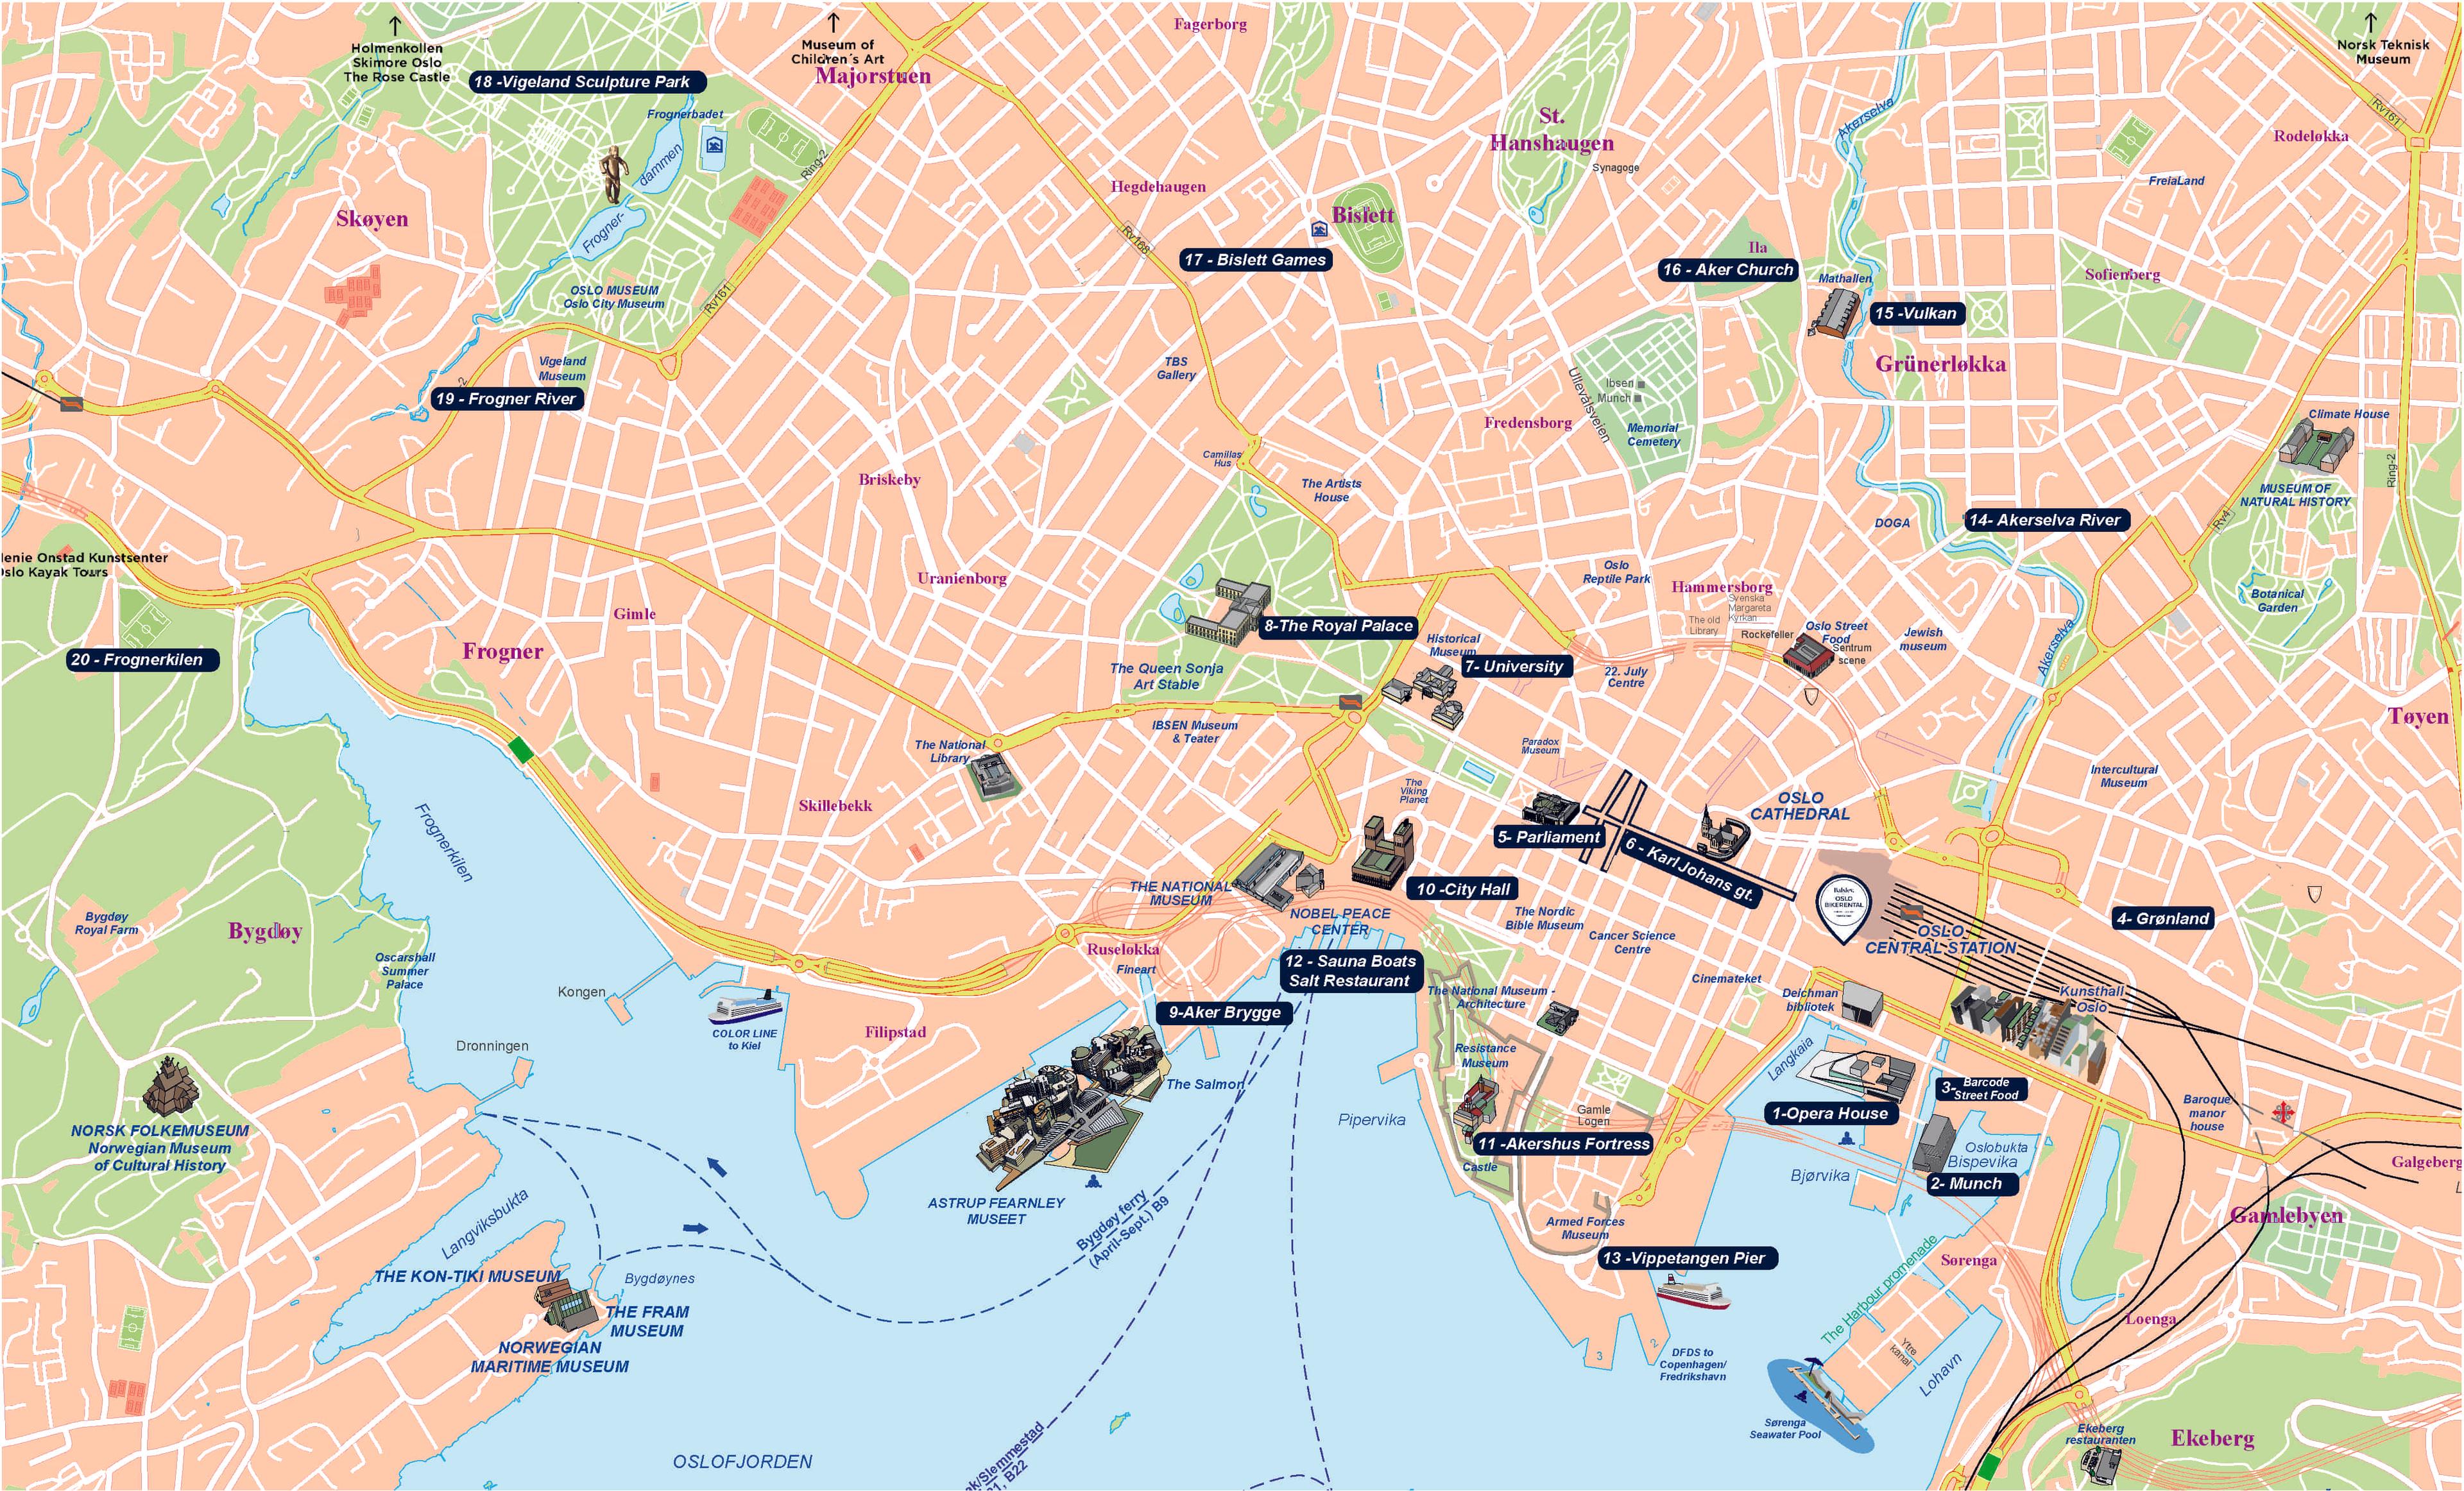 Oslo and beyond bike tour map